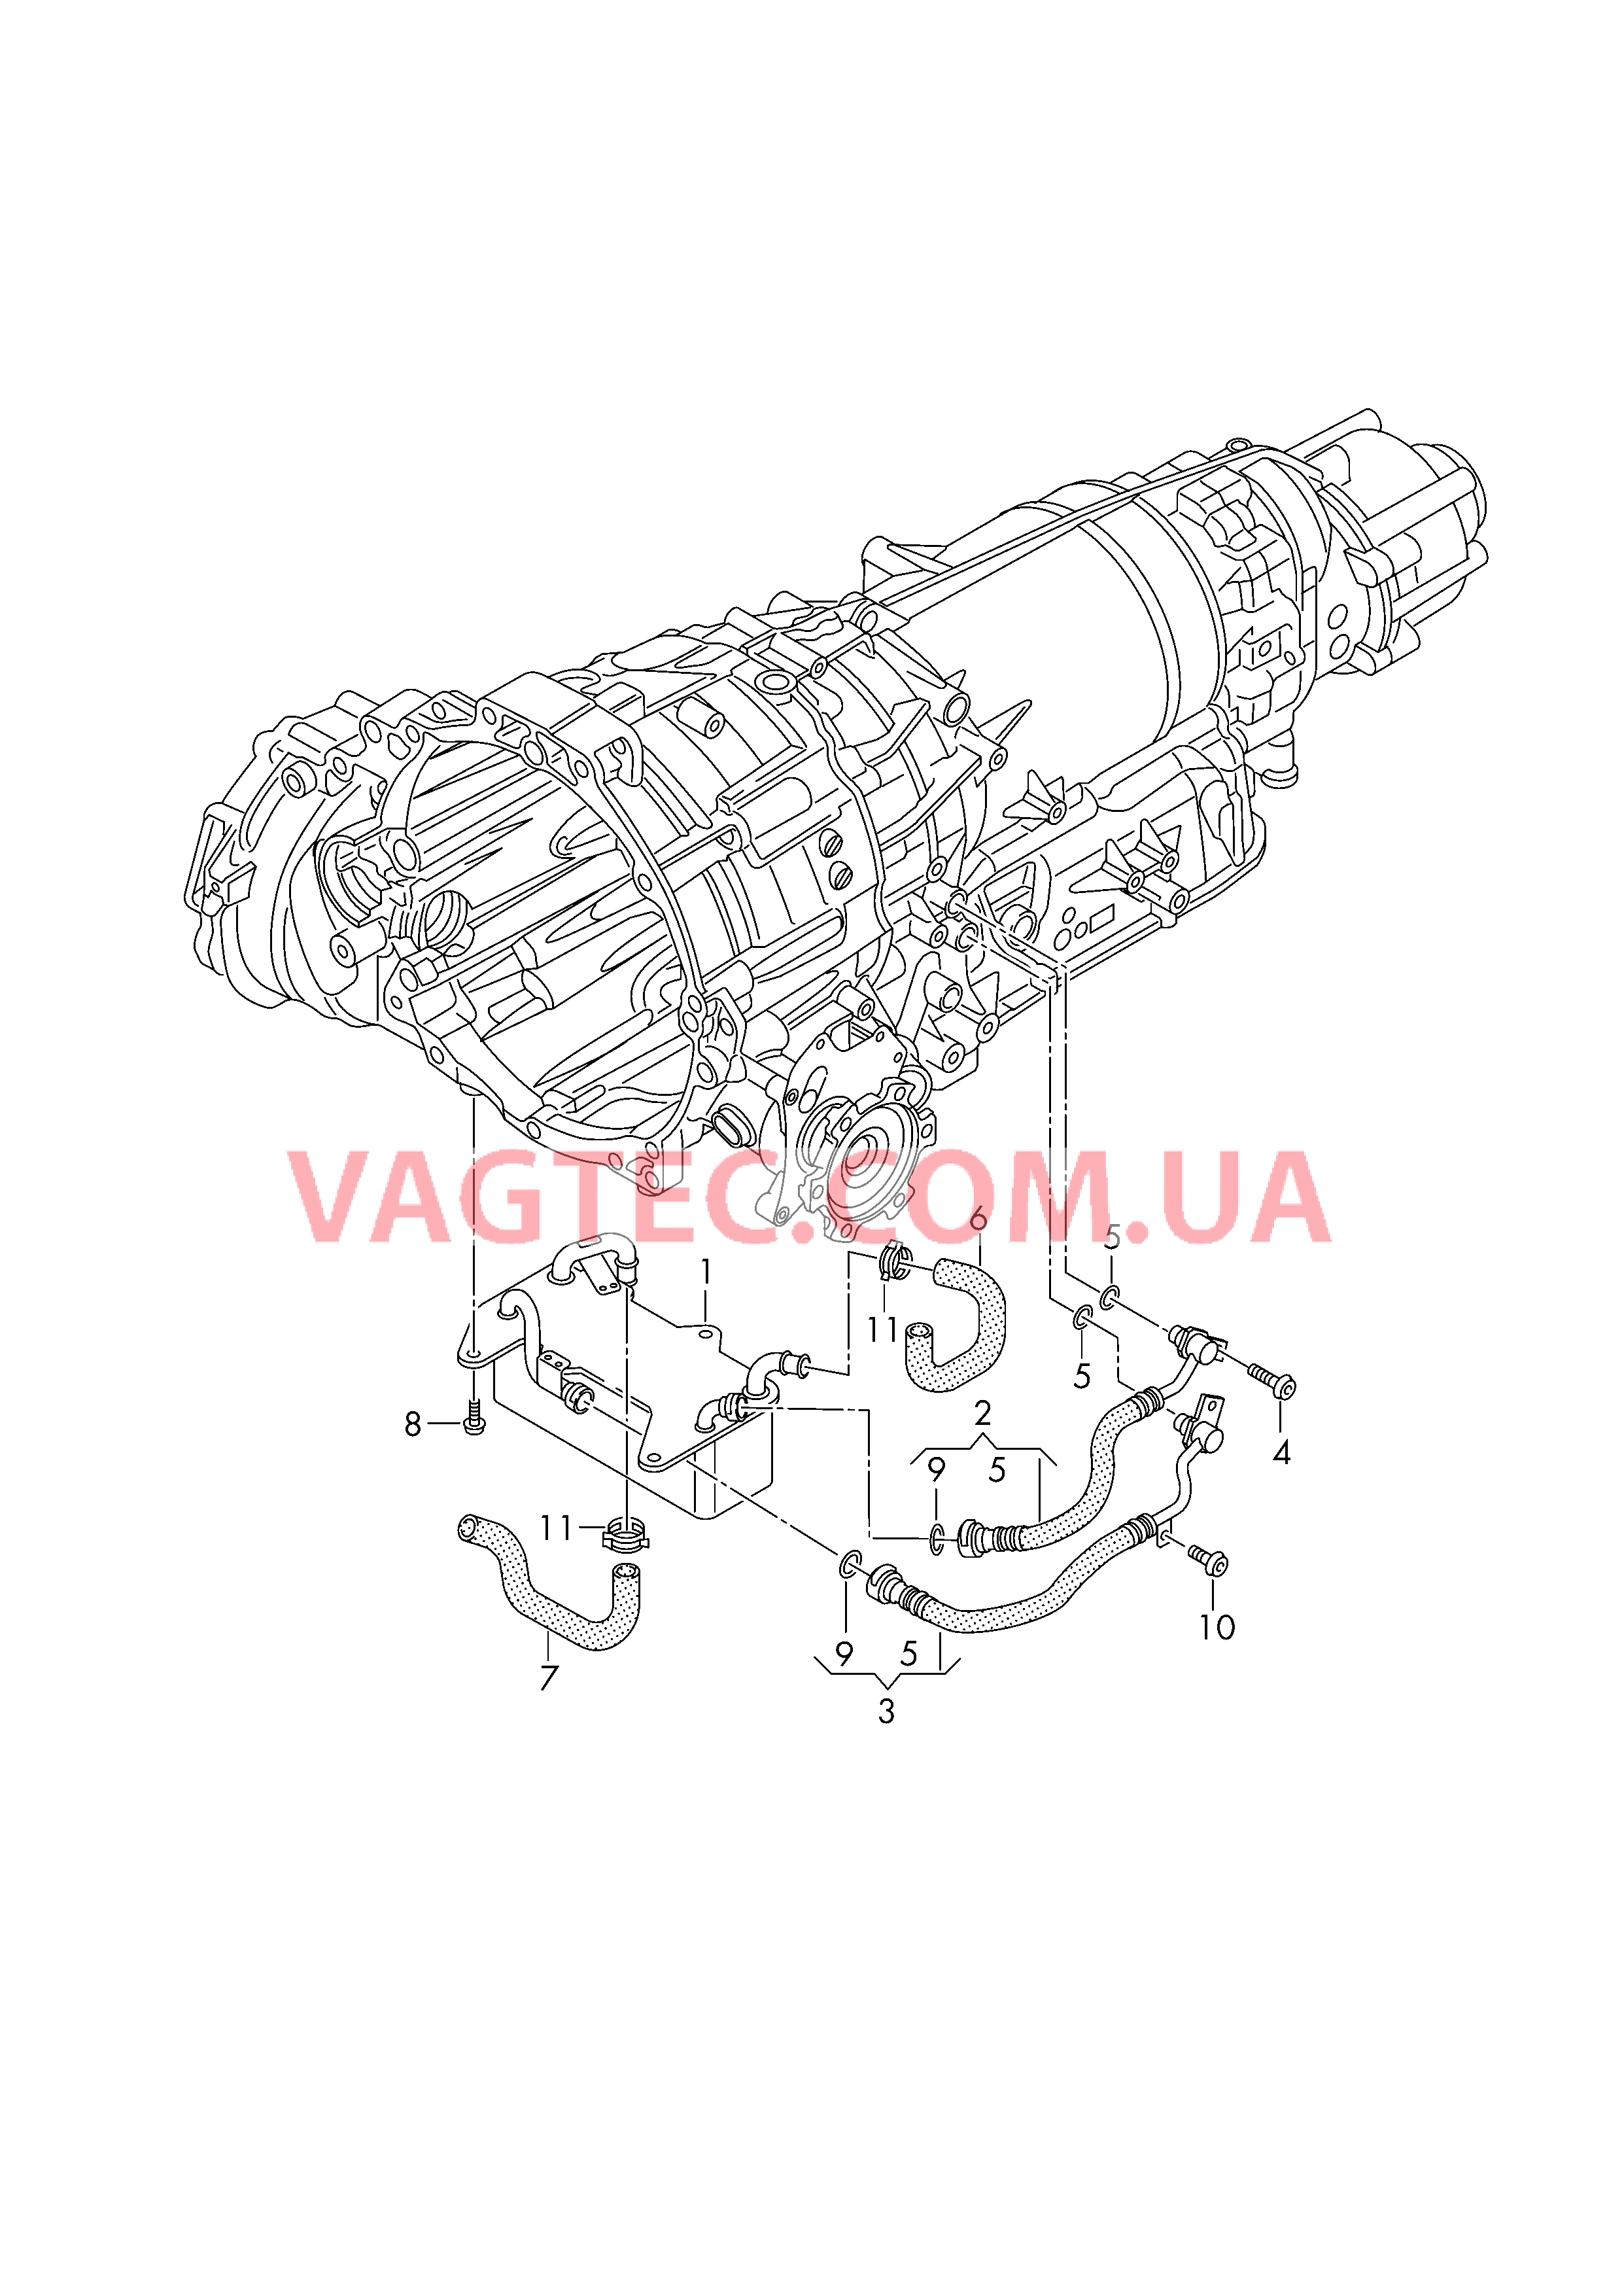 Напорный маслопровод для охлаждения масла коробки передач  Масляный радиатор КП  для AUDI A4 2017